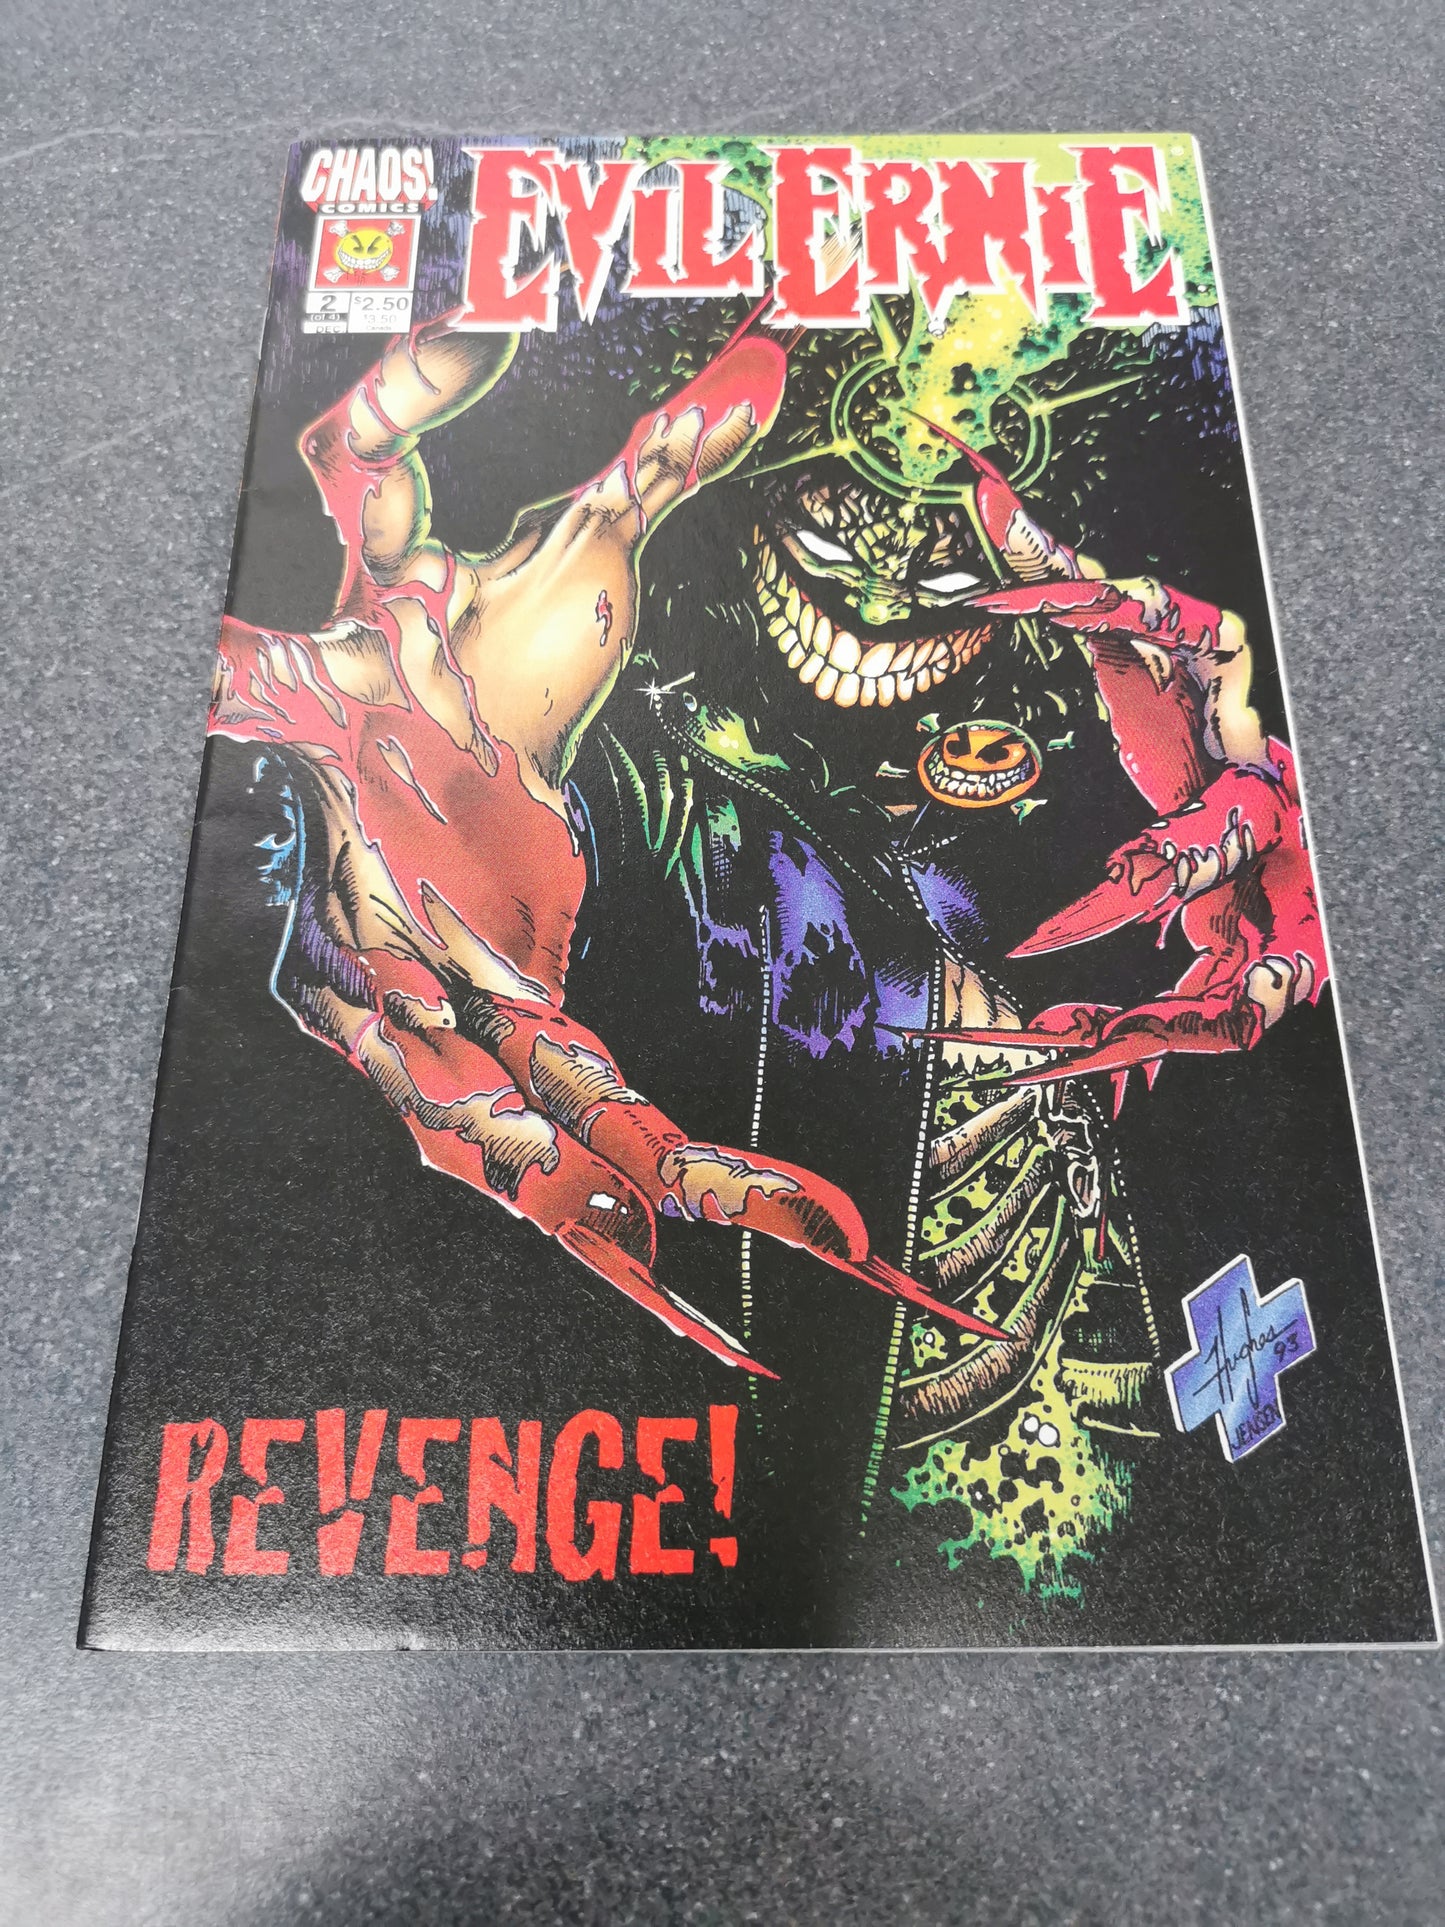 Evil Ernie Revenge #2 1994 Chaos comic